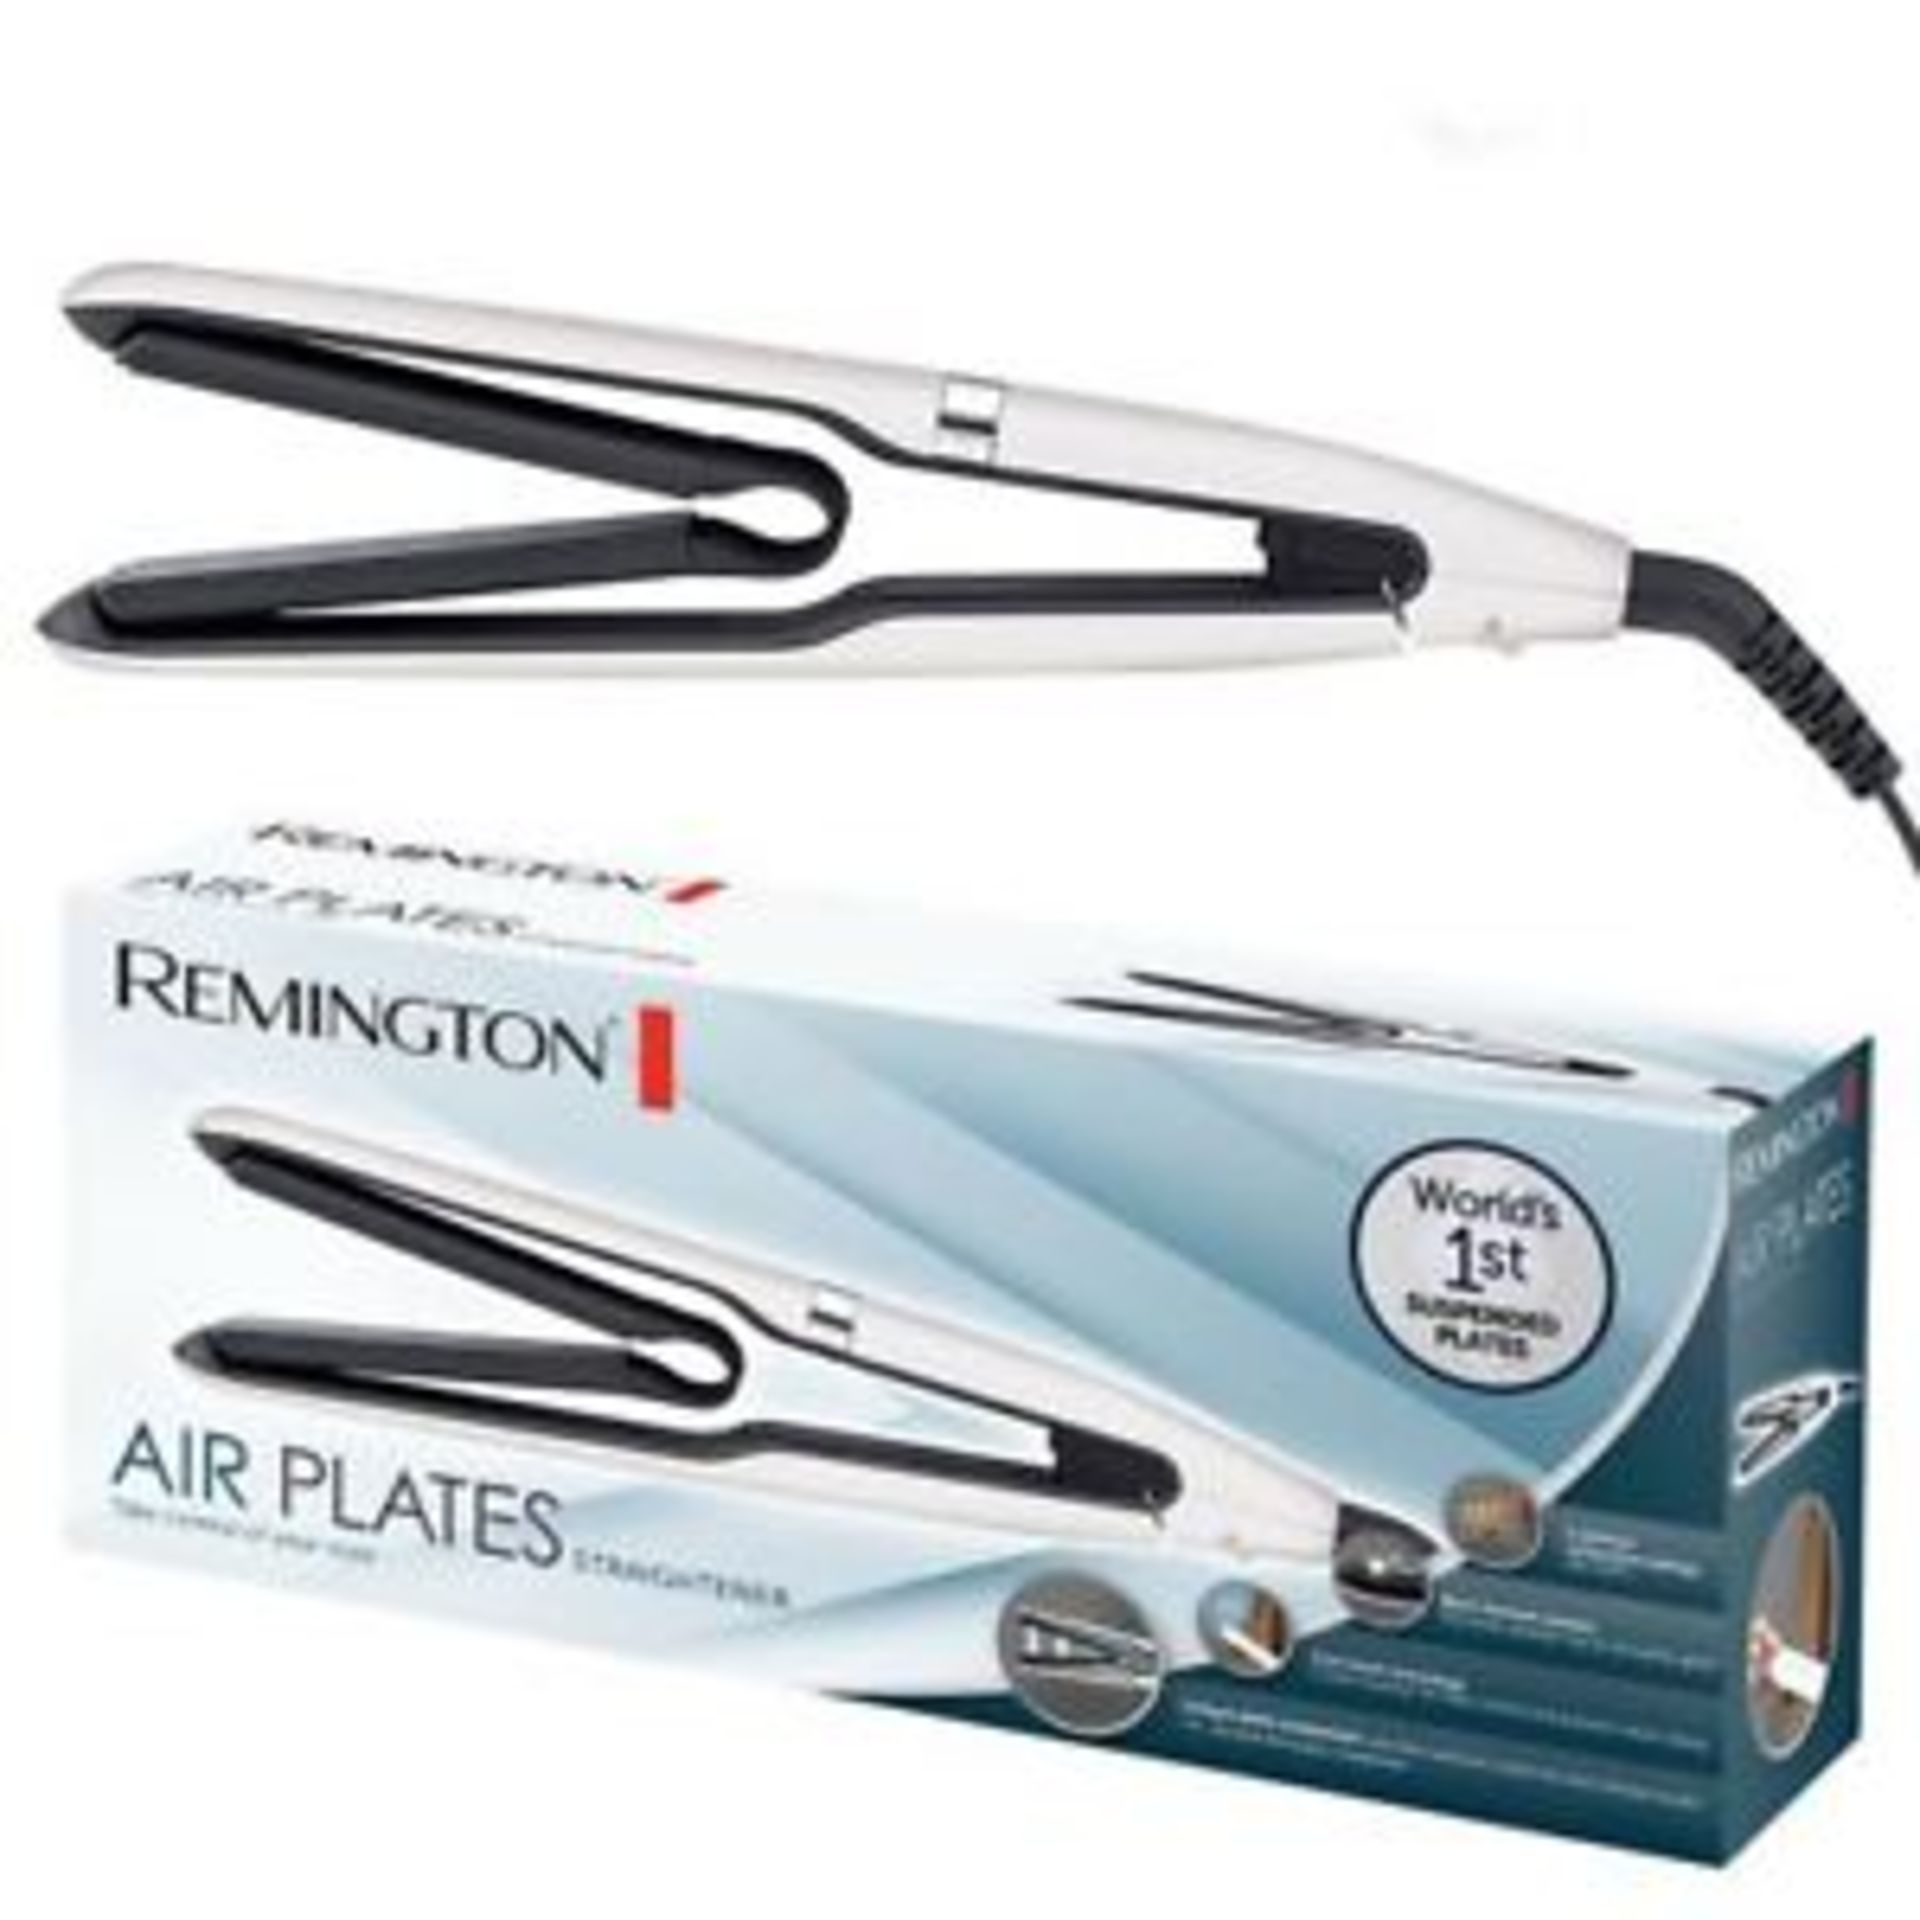 + VAT Brand New Remington Air Plates Straightener - Argos Price Â£79.99 - 5 Optimum Temperature - Image 2 of 2